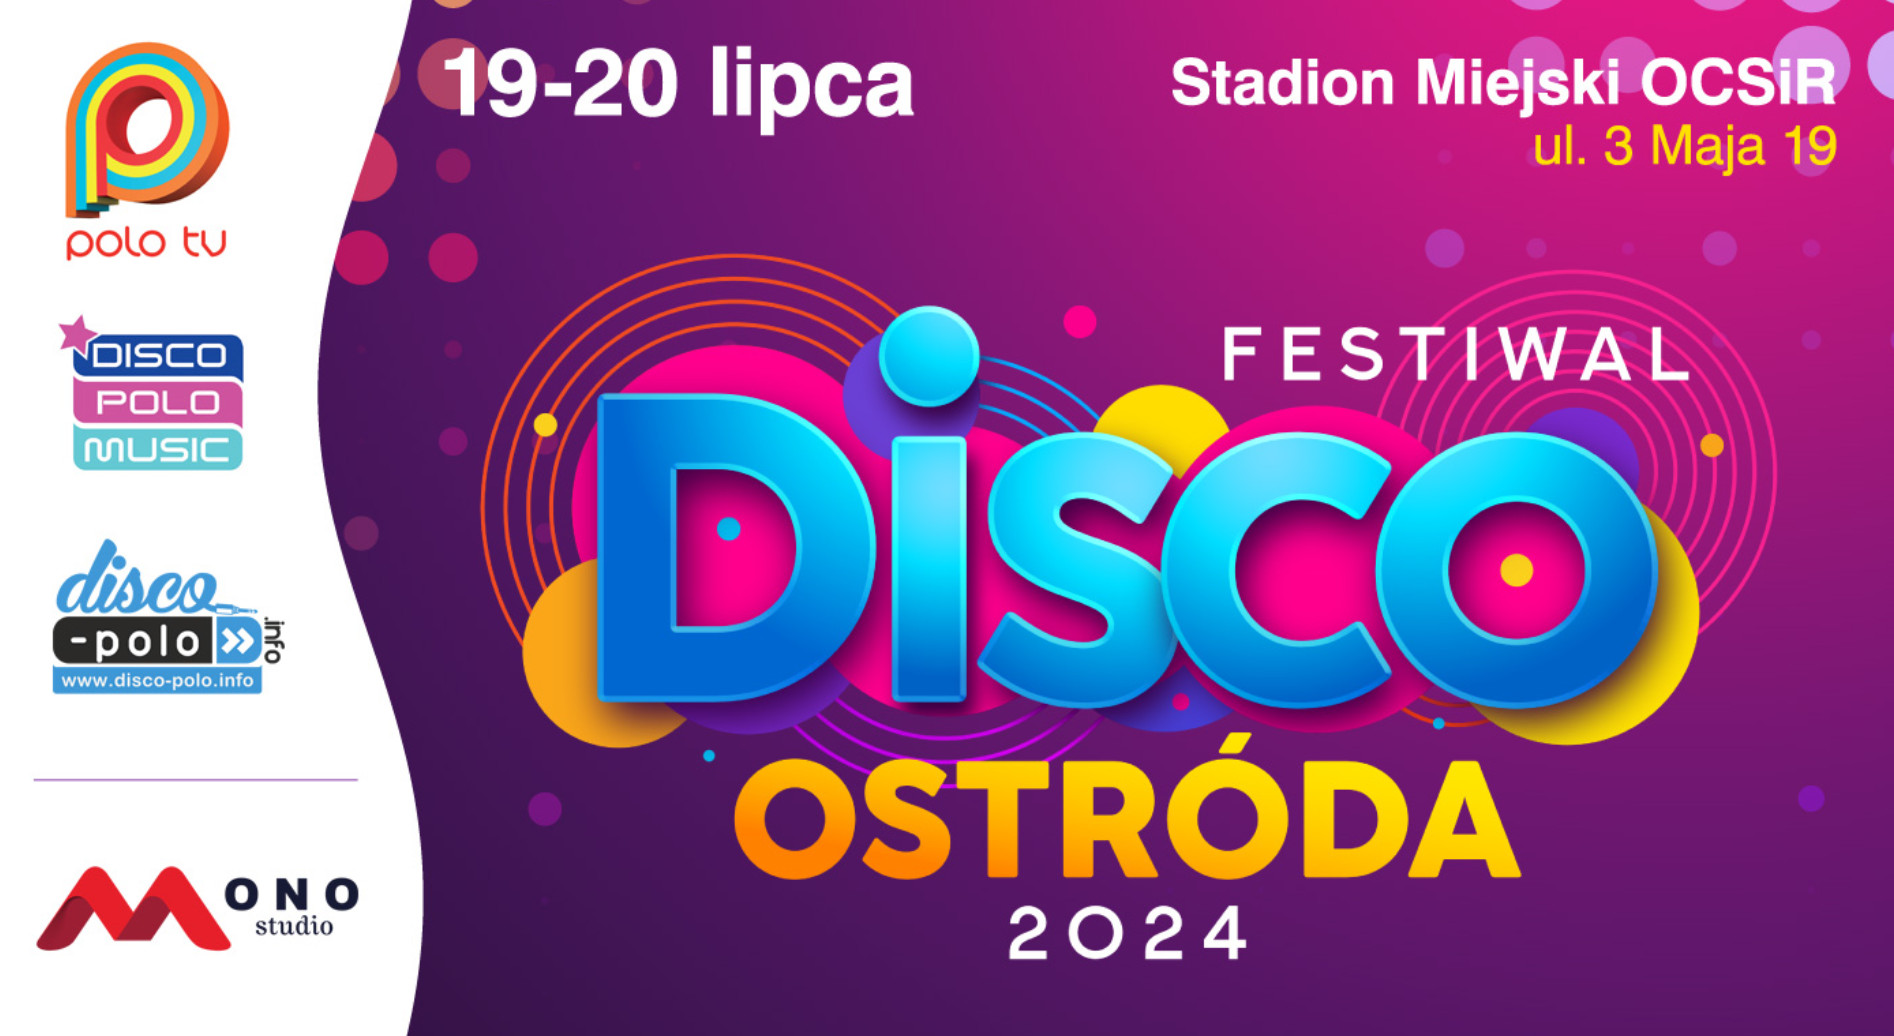 Ponad 60 gwiazd disco polo! Festiwal Disco Ostróda najgorętszym wydarzeniem lata 2024?! Oto szczegóły! 